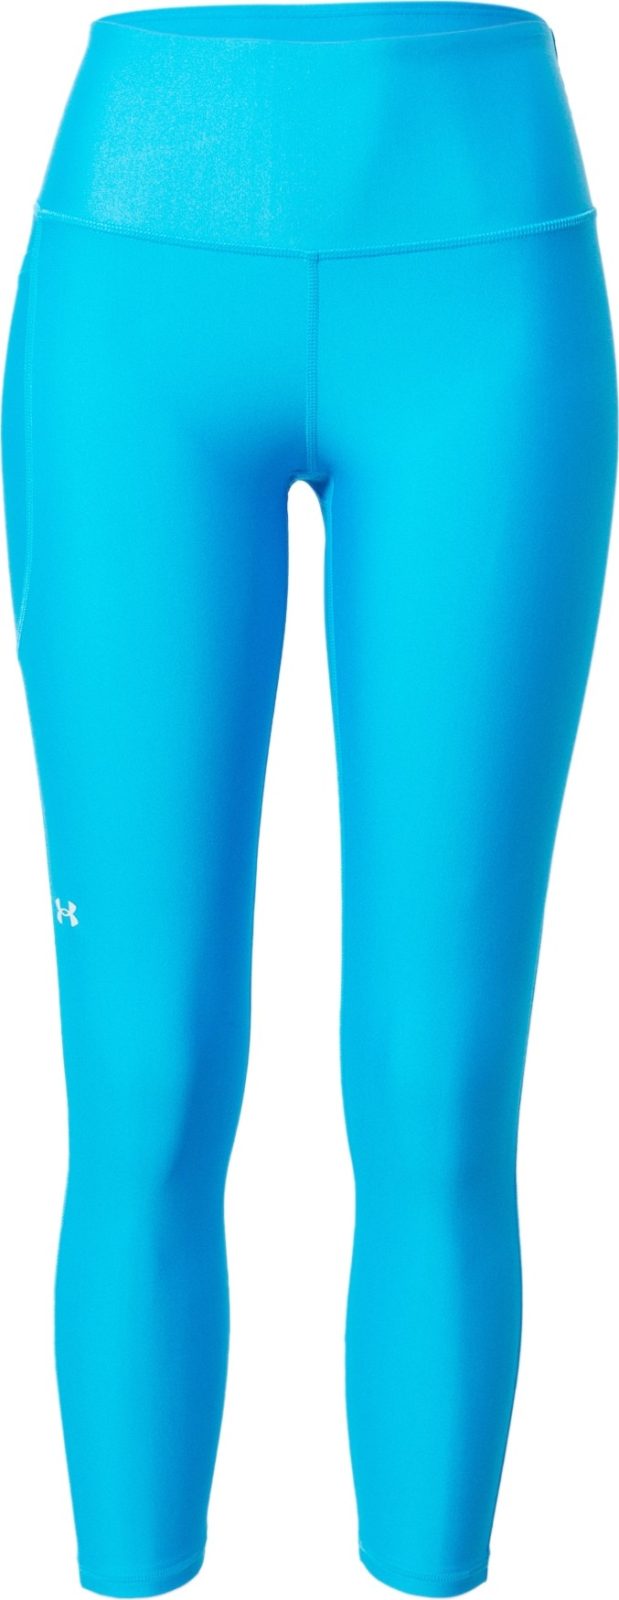 UNDER ARMOUR Sportovní kalhoty 'Armour' azurová modrá / šedá